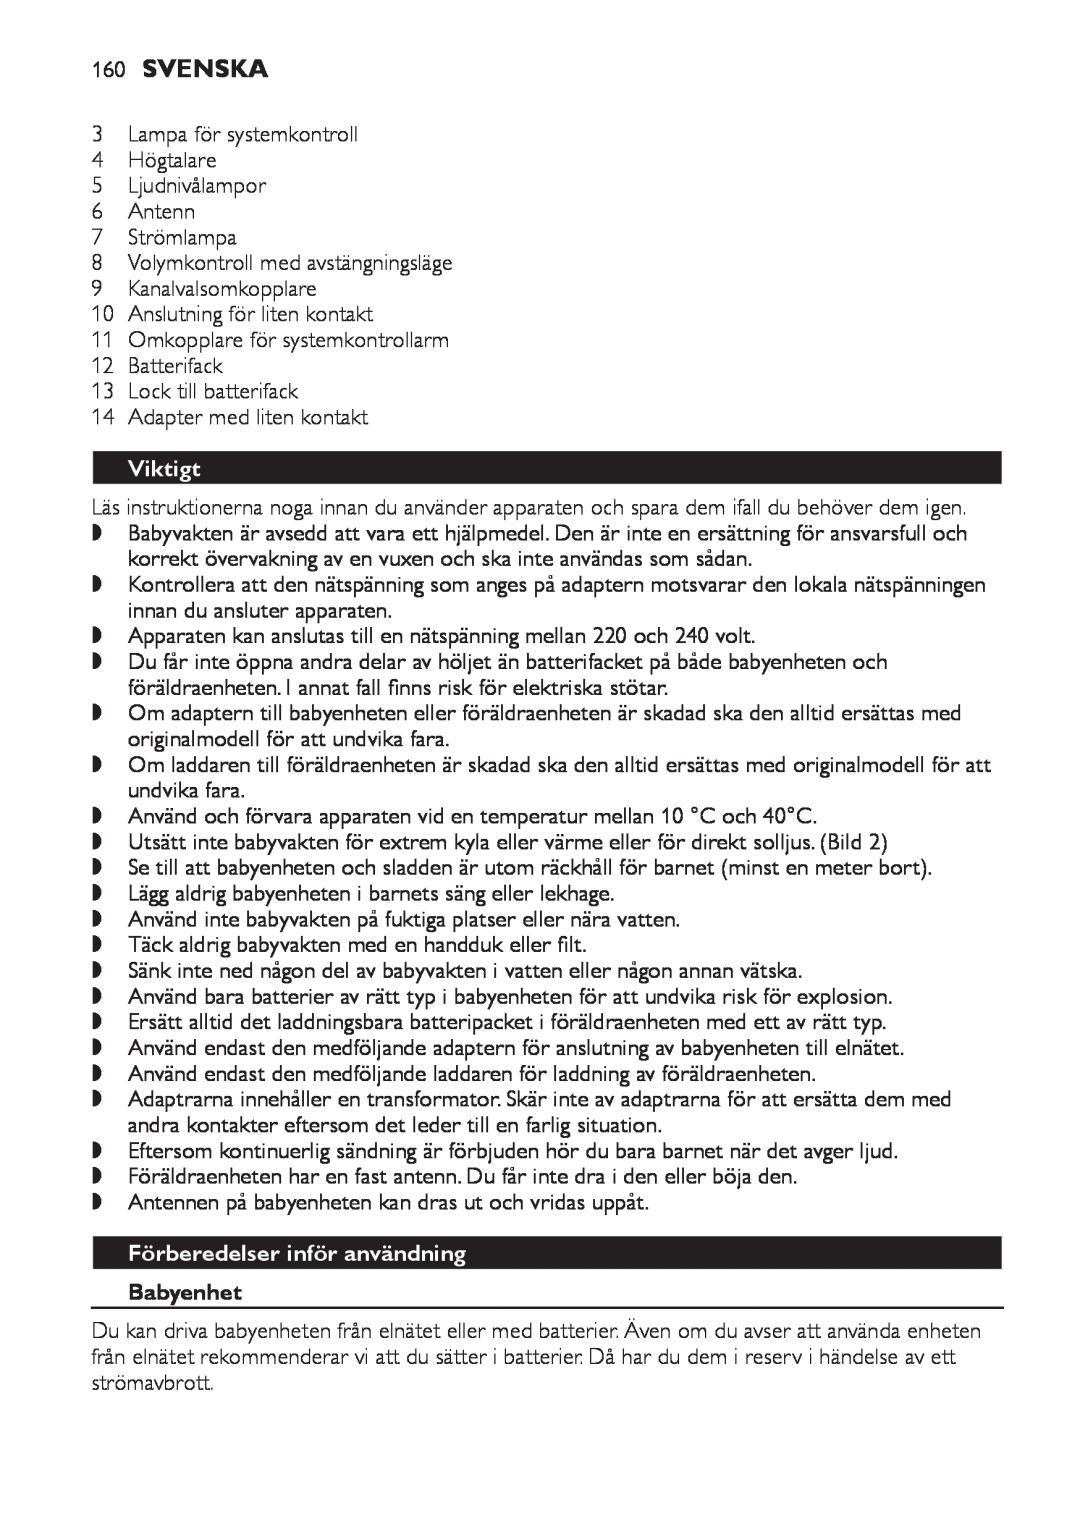 Philips SCD 469 manual 160Svenska, Viktigt, Förberedelser inför användning, Babyenhet 